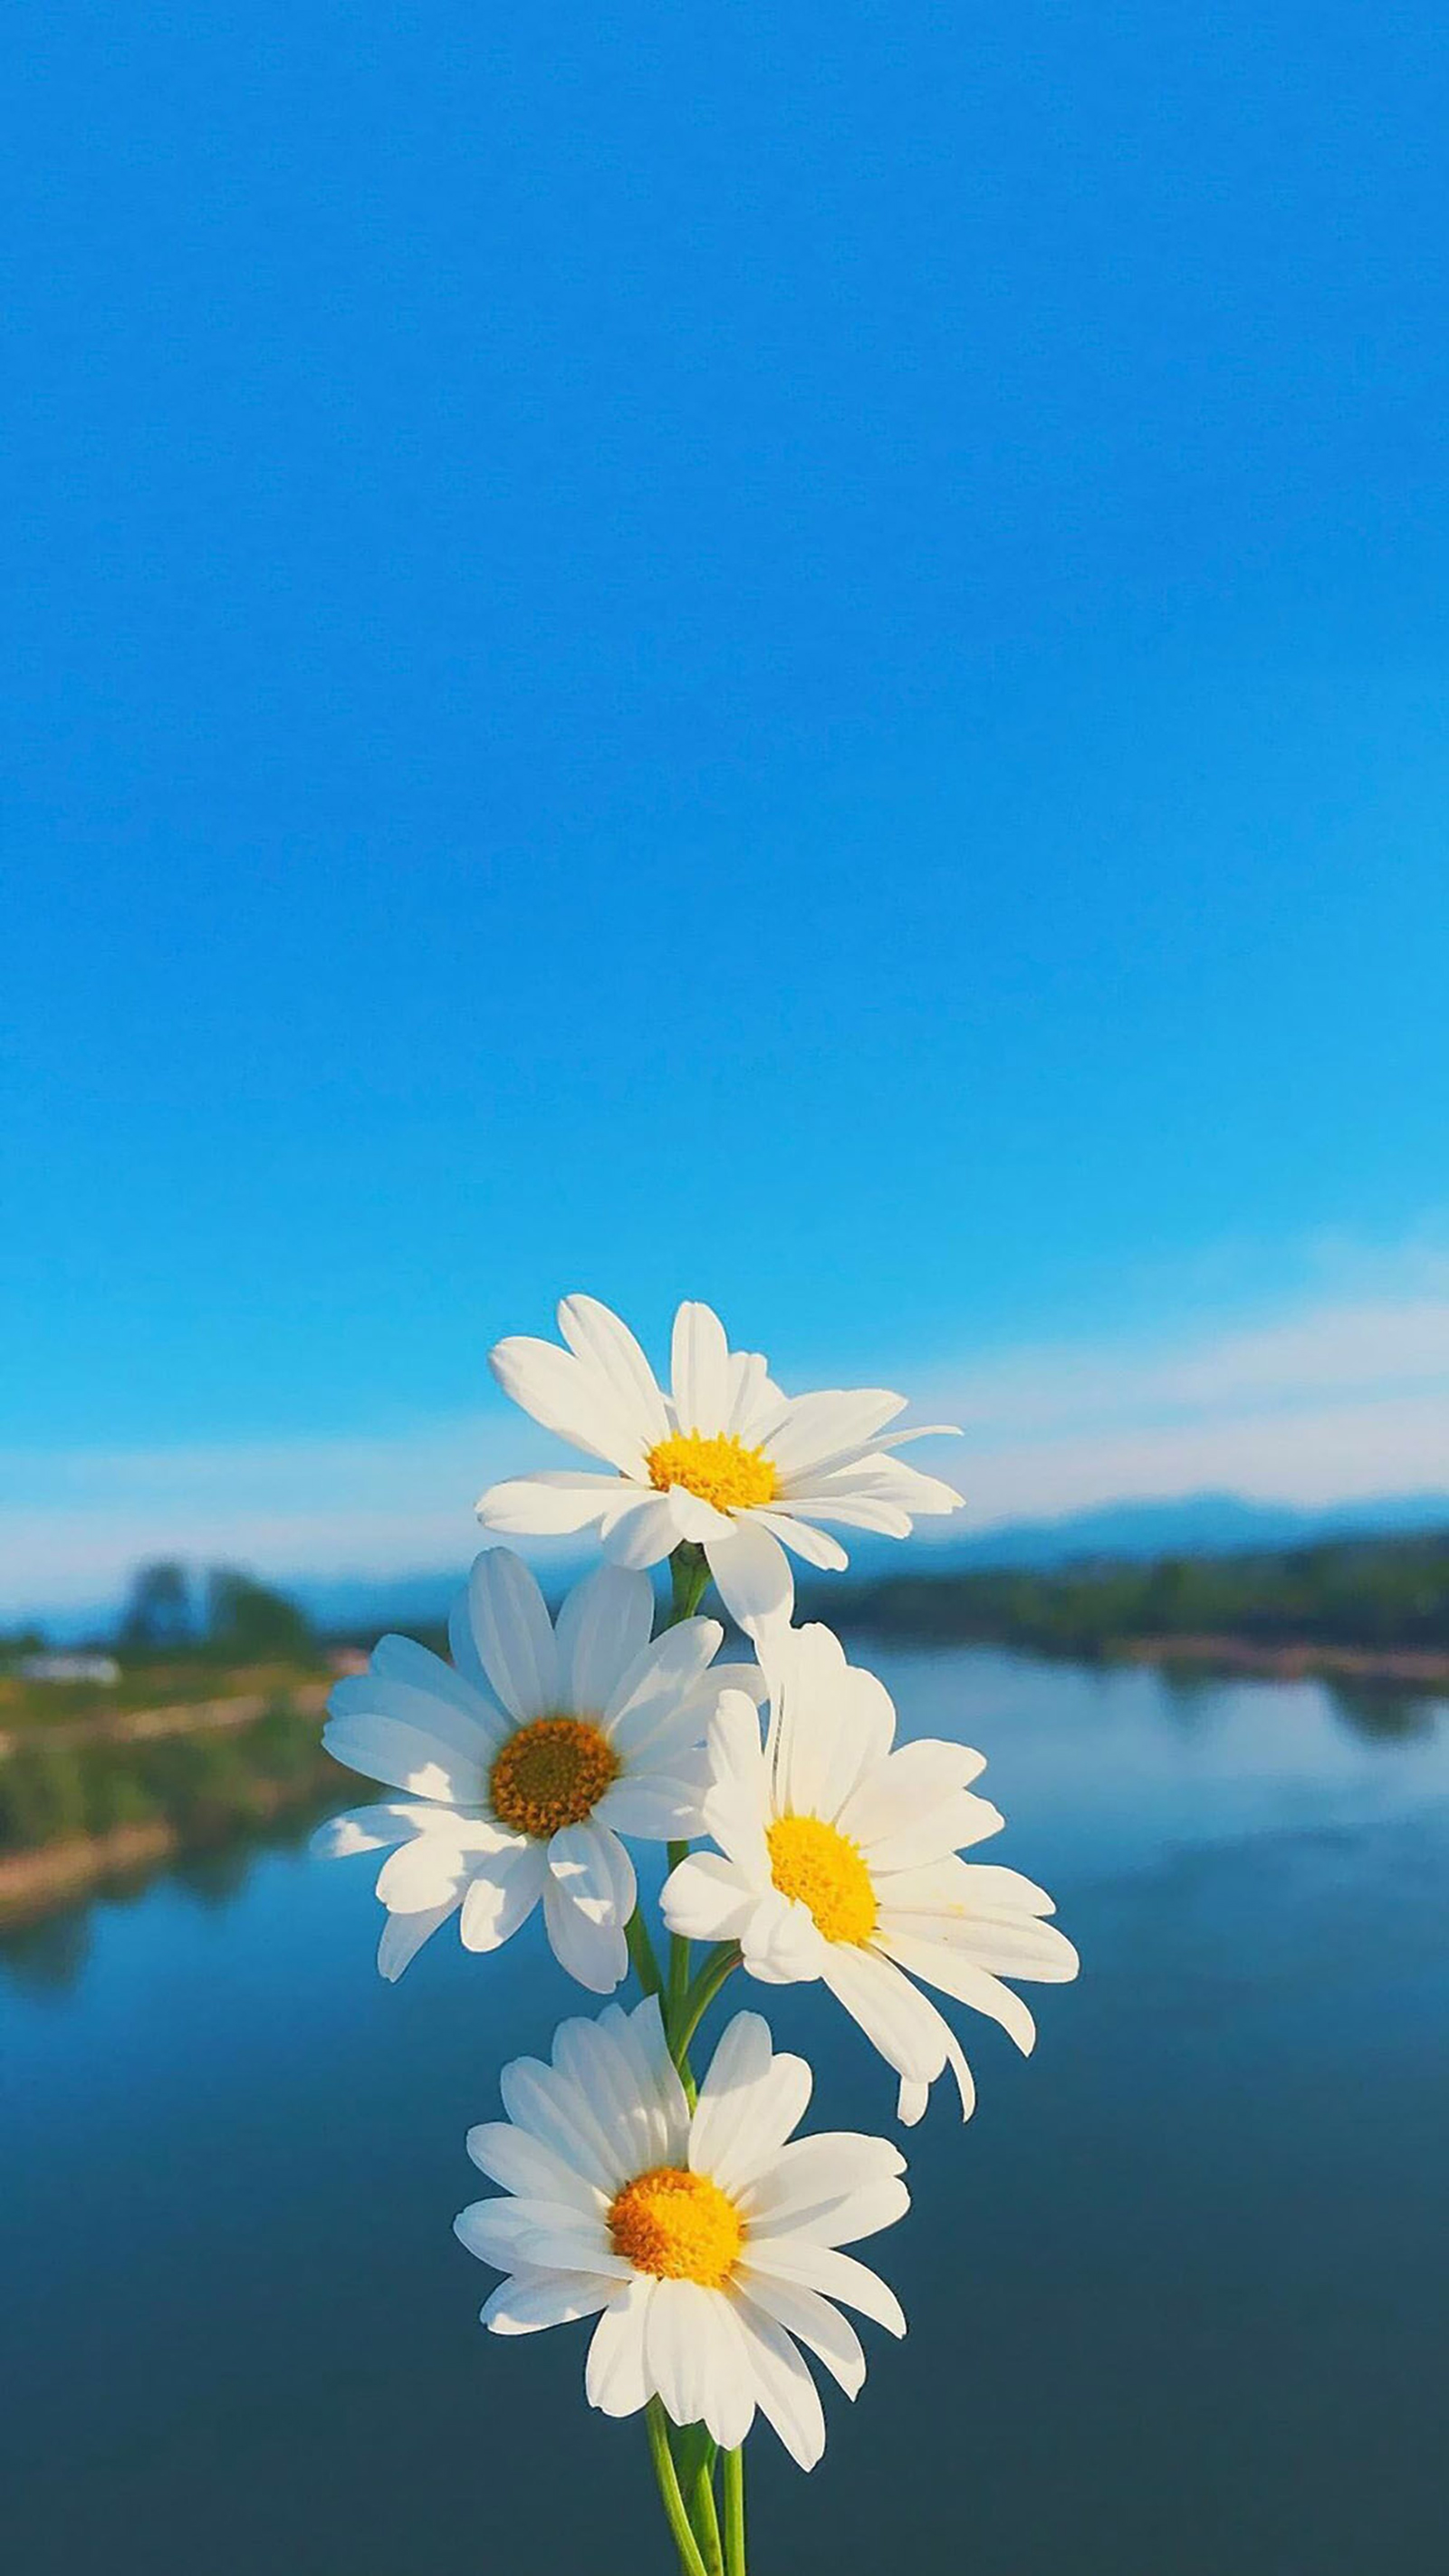 Top 101 ảnh hoa cúc trắng nền đen đẹp nhất